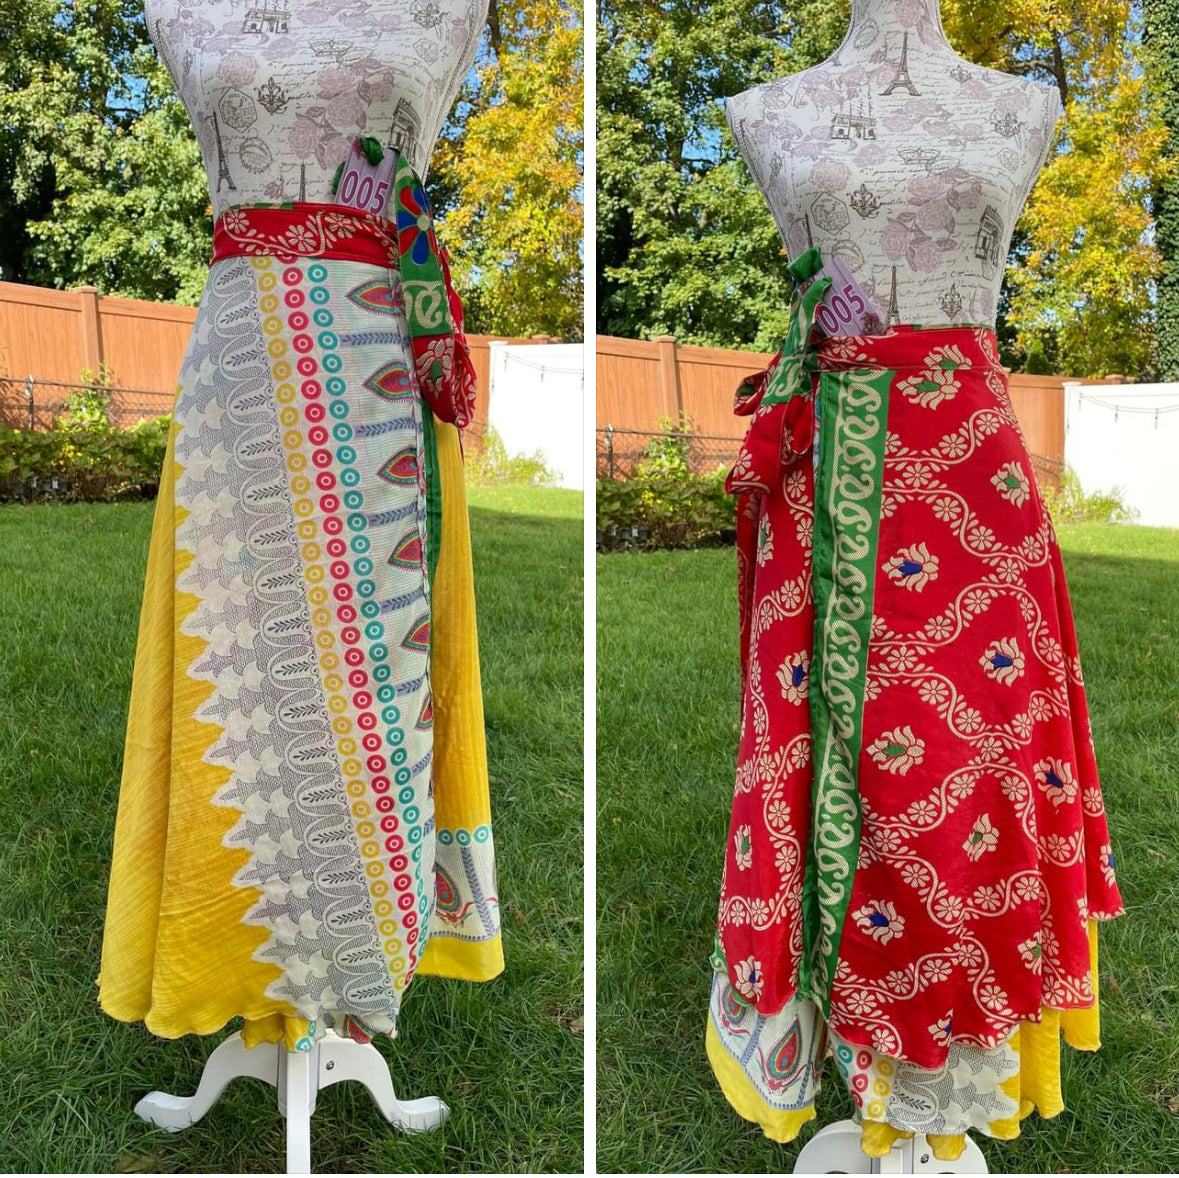 Size 00-4 Reversible Sari Skirts